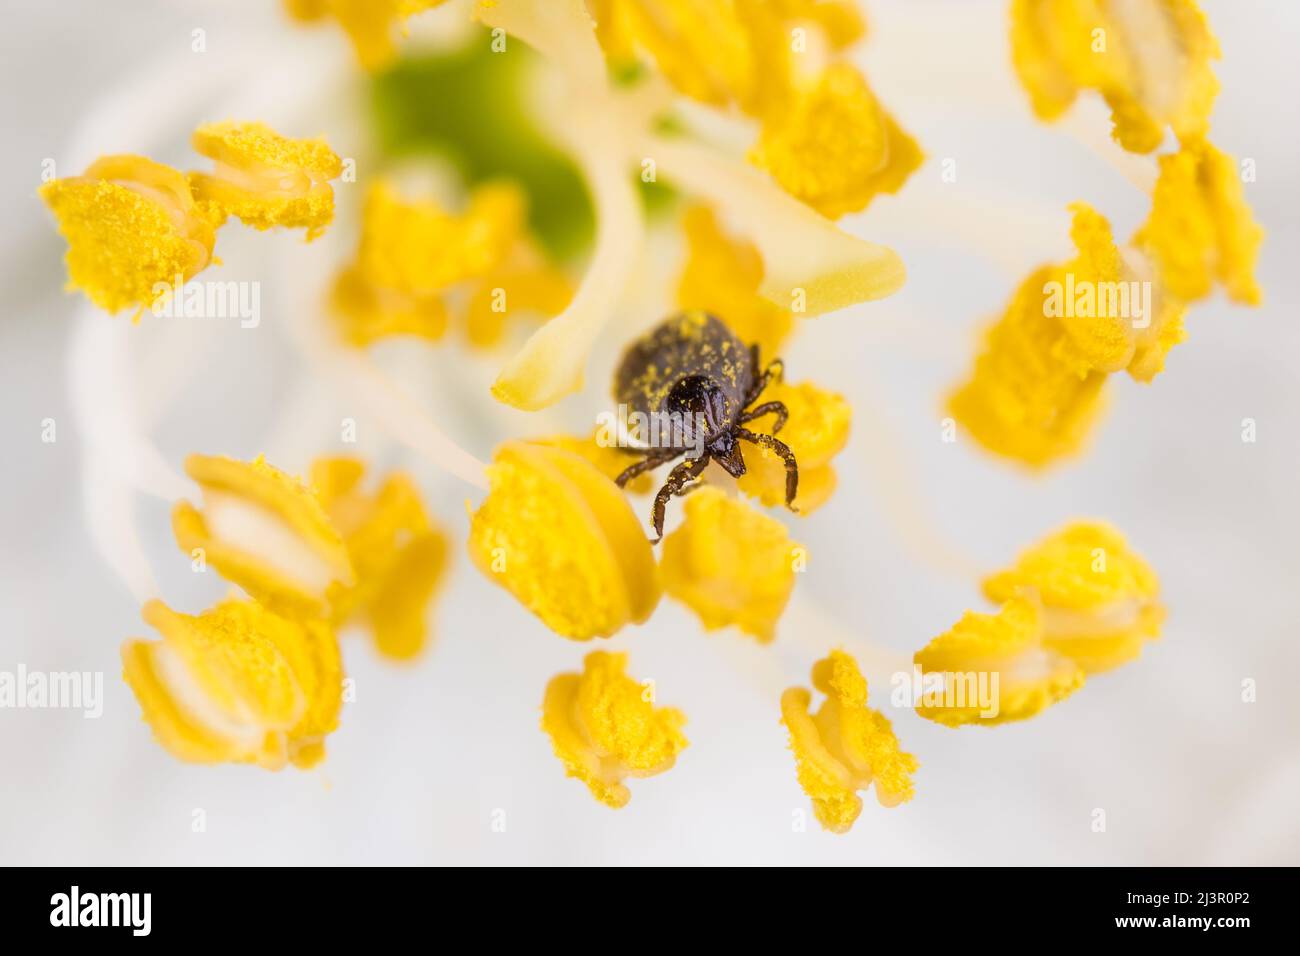 Weibliche Hirschzecke kriecht auf einem gelben Staubgefäß einer Blüte mit weißen Blütenblättern. Ixodes ricinus. Kleiner Parasit im Frühlingsblumendetail mit Pollenkörnern. Stockfoto